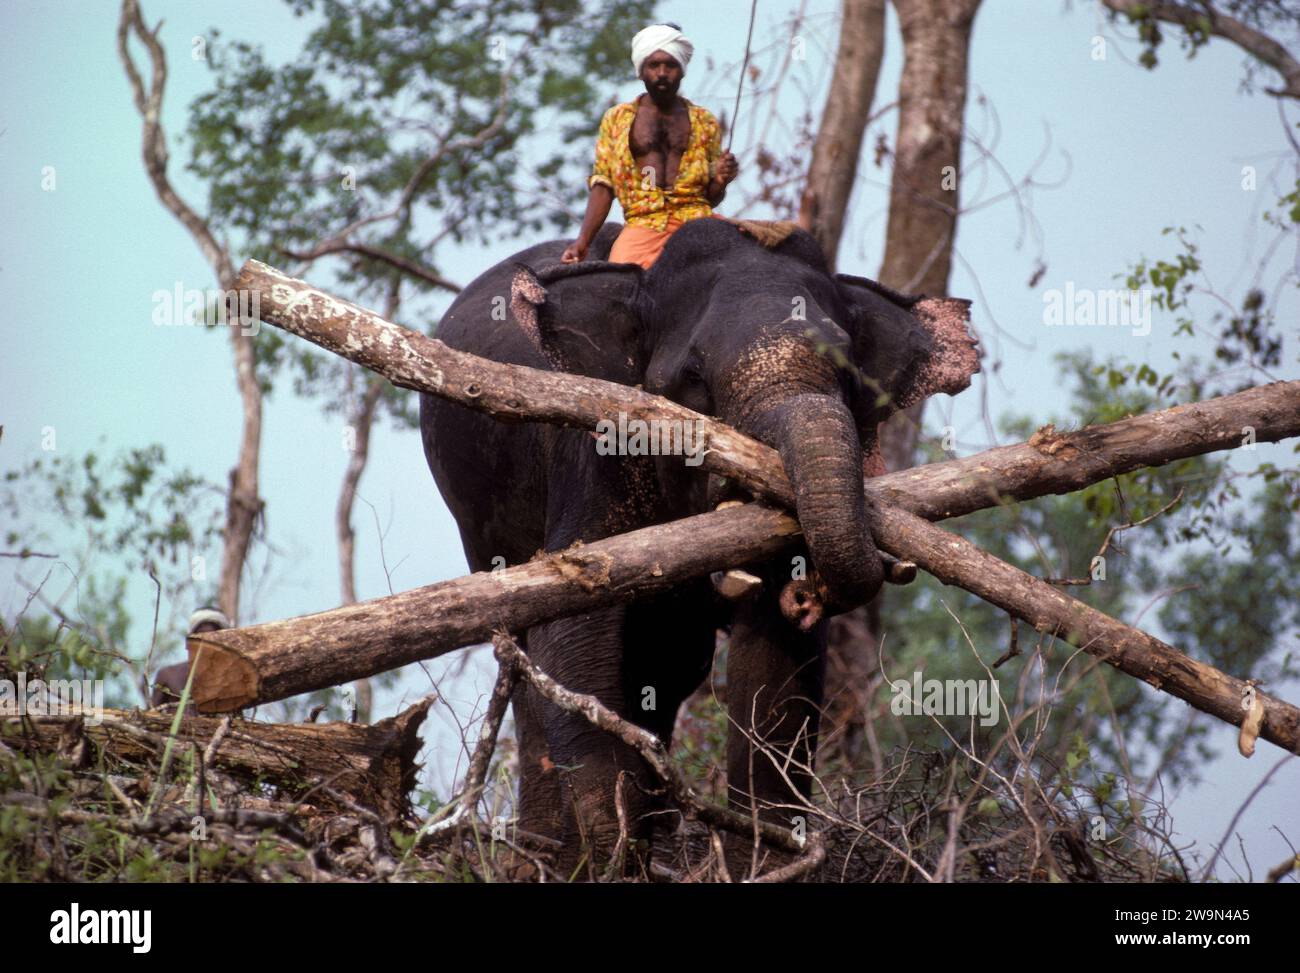 Elephant logging India Stock Photo